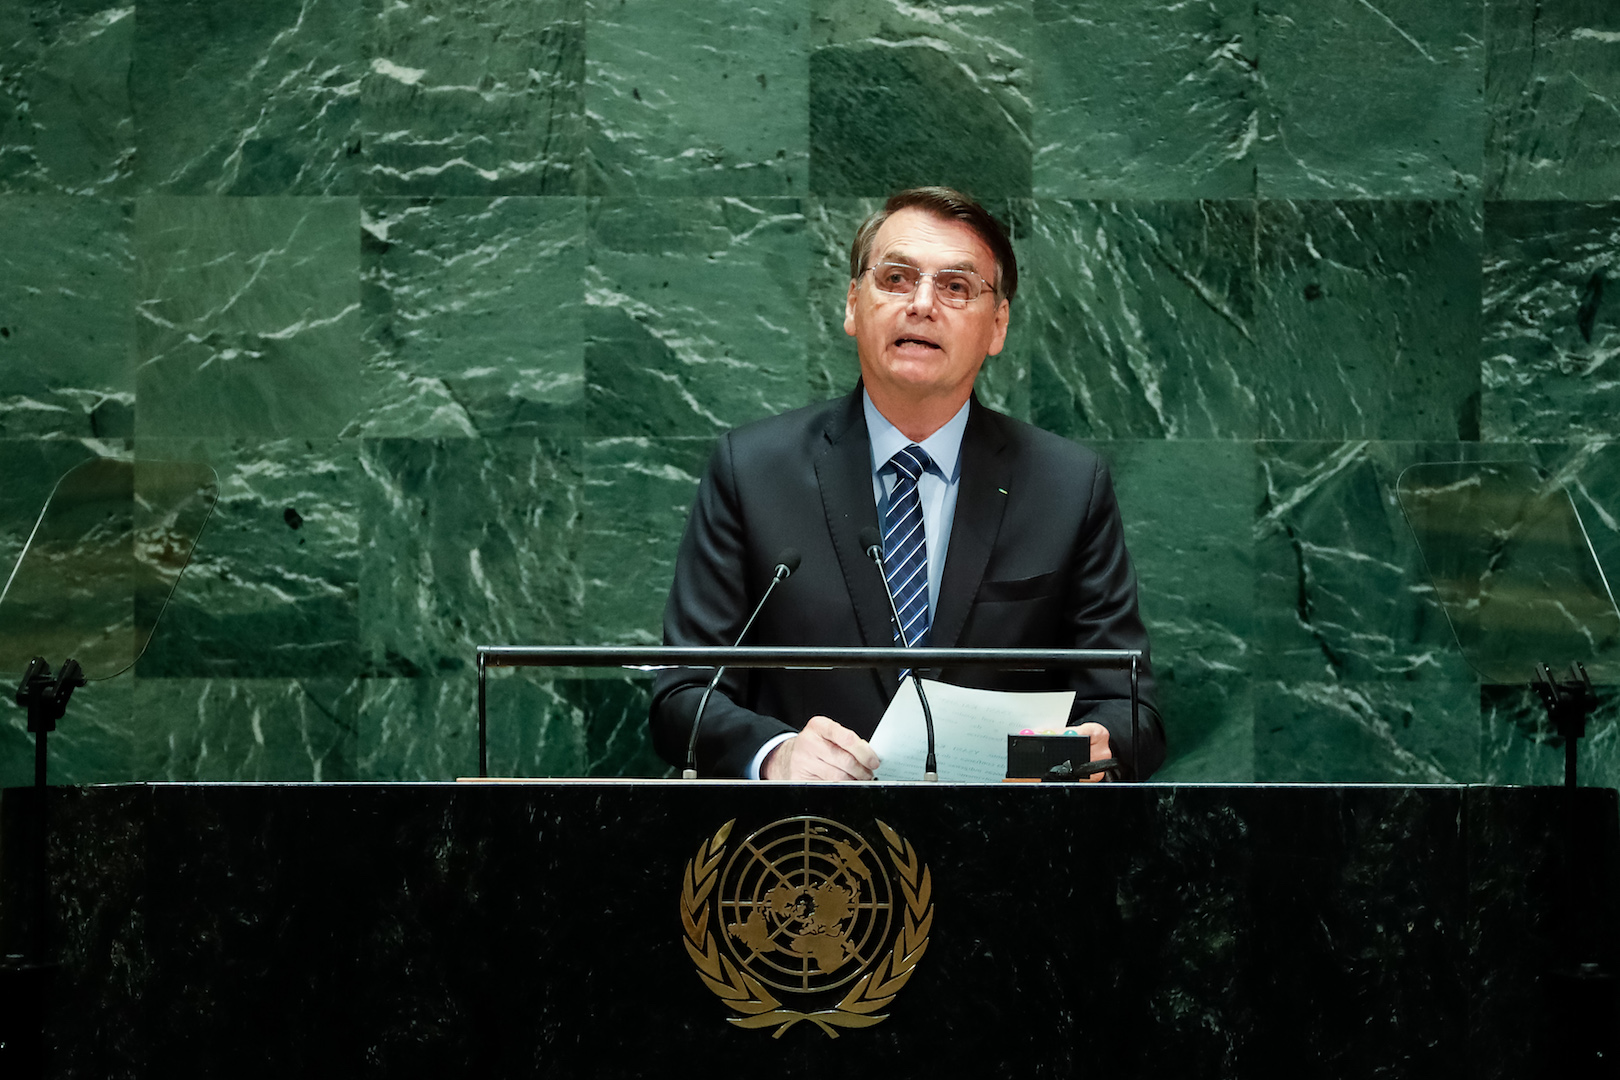 Brazil, Brazil's President, Jair Bolsonaro, speaks at the United Nation's General Assembly meeting